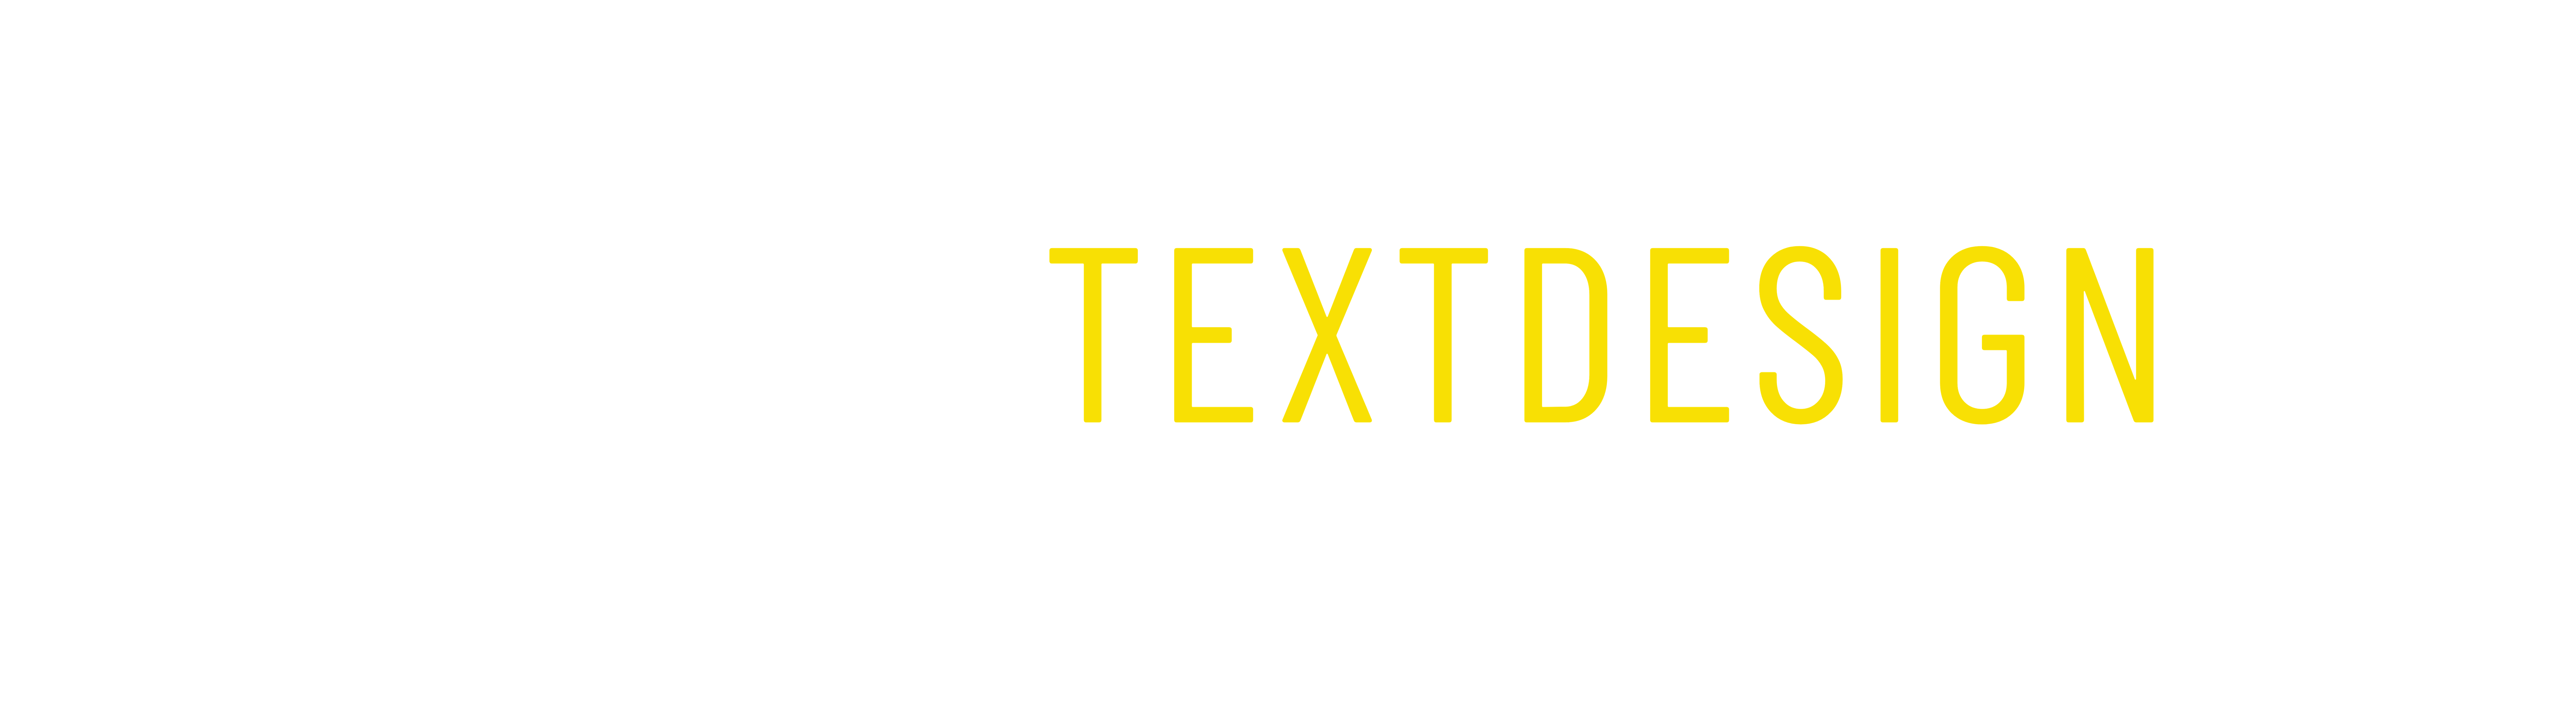 mkn-textdesign